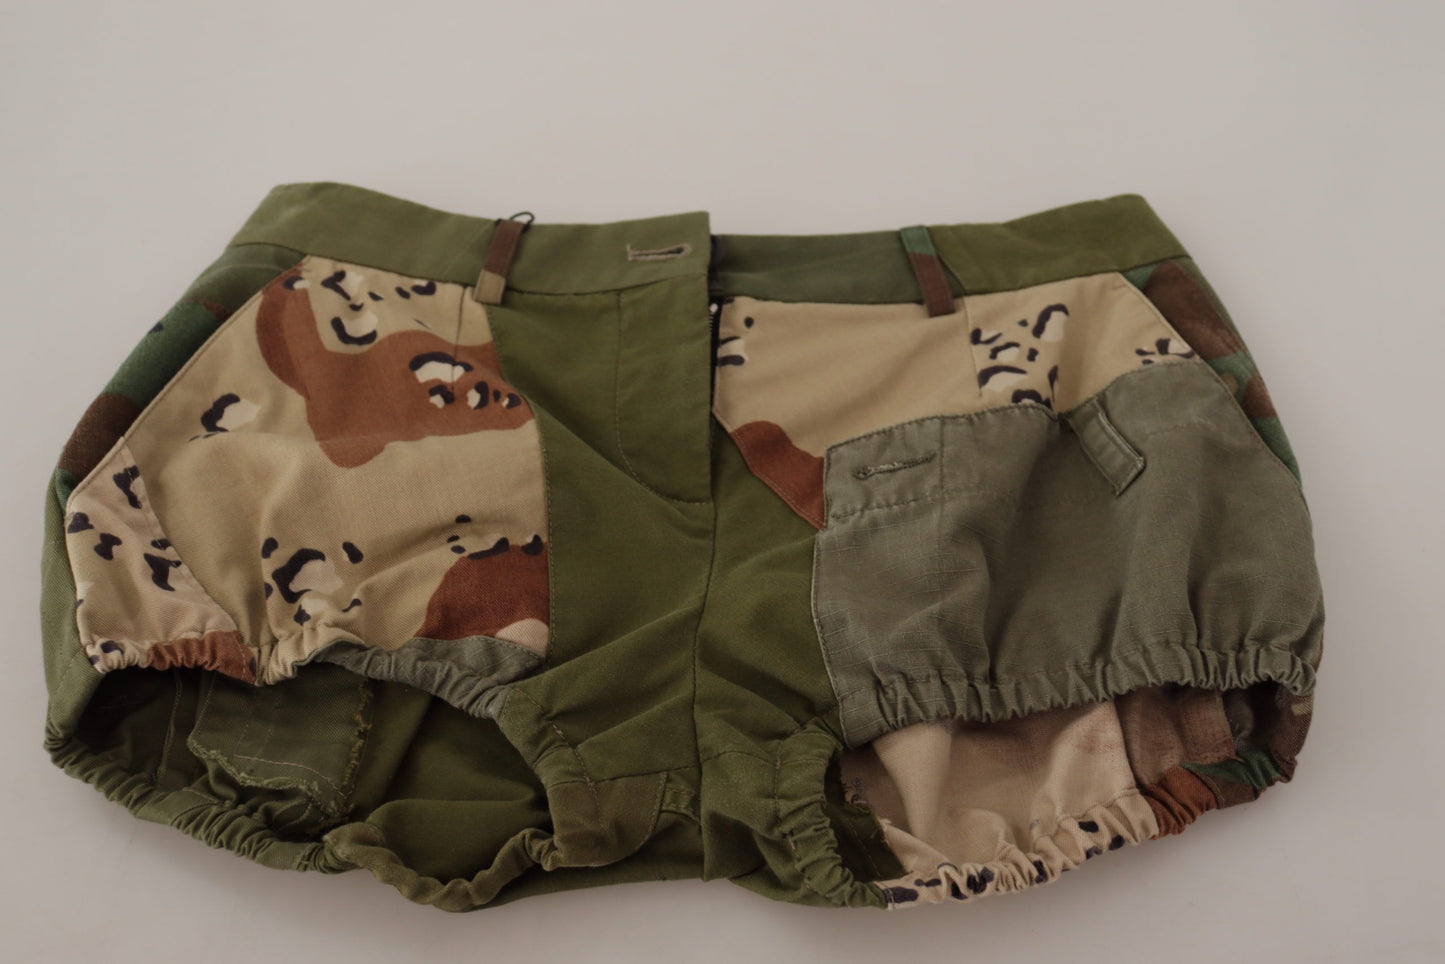 Dolce & Gabbana Green High Welt Pants Calton Army Shorts